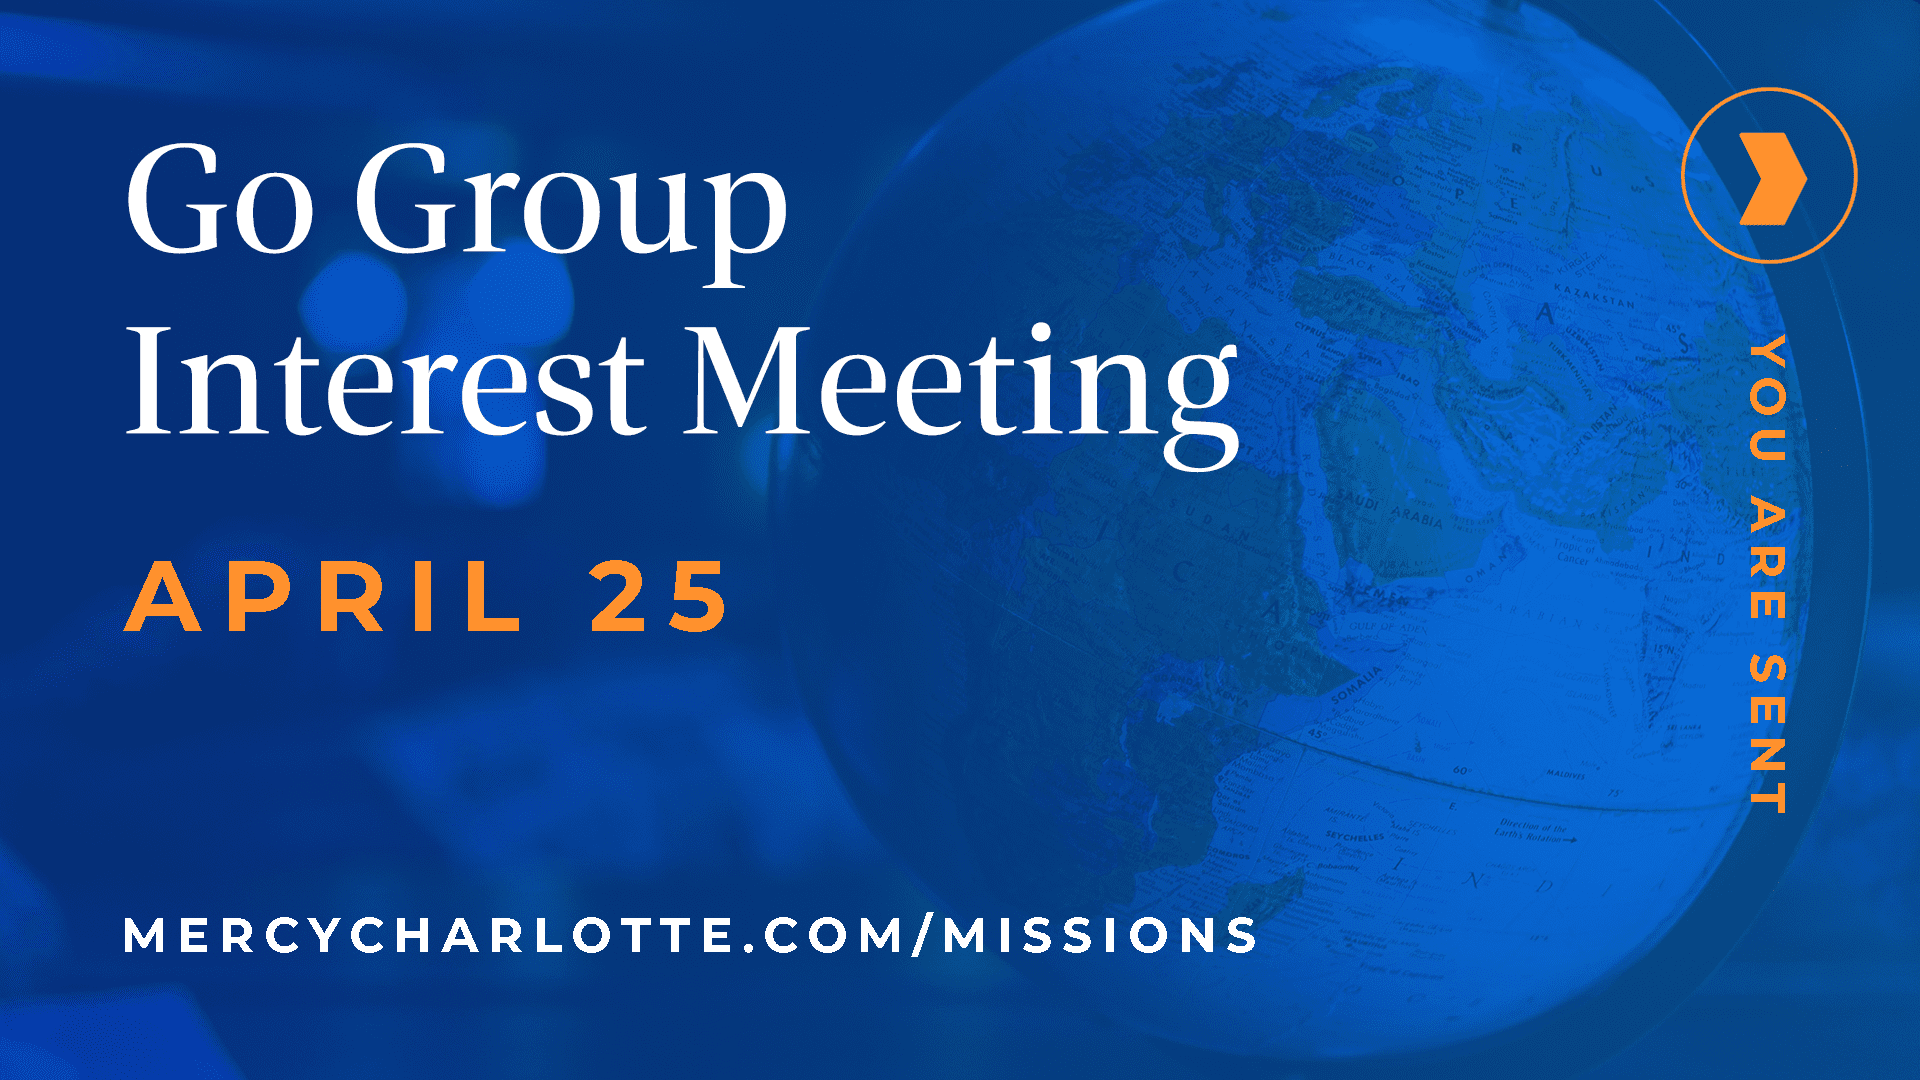 Go Group Interest Meeting 1 - Go Group Interest Meeting